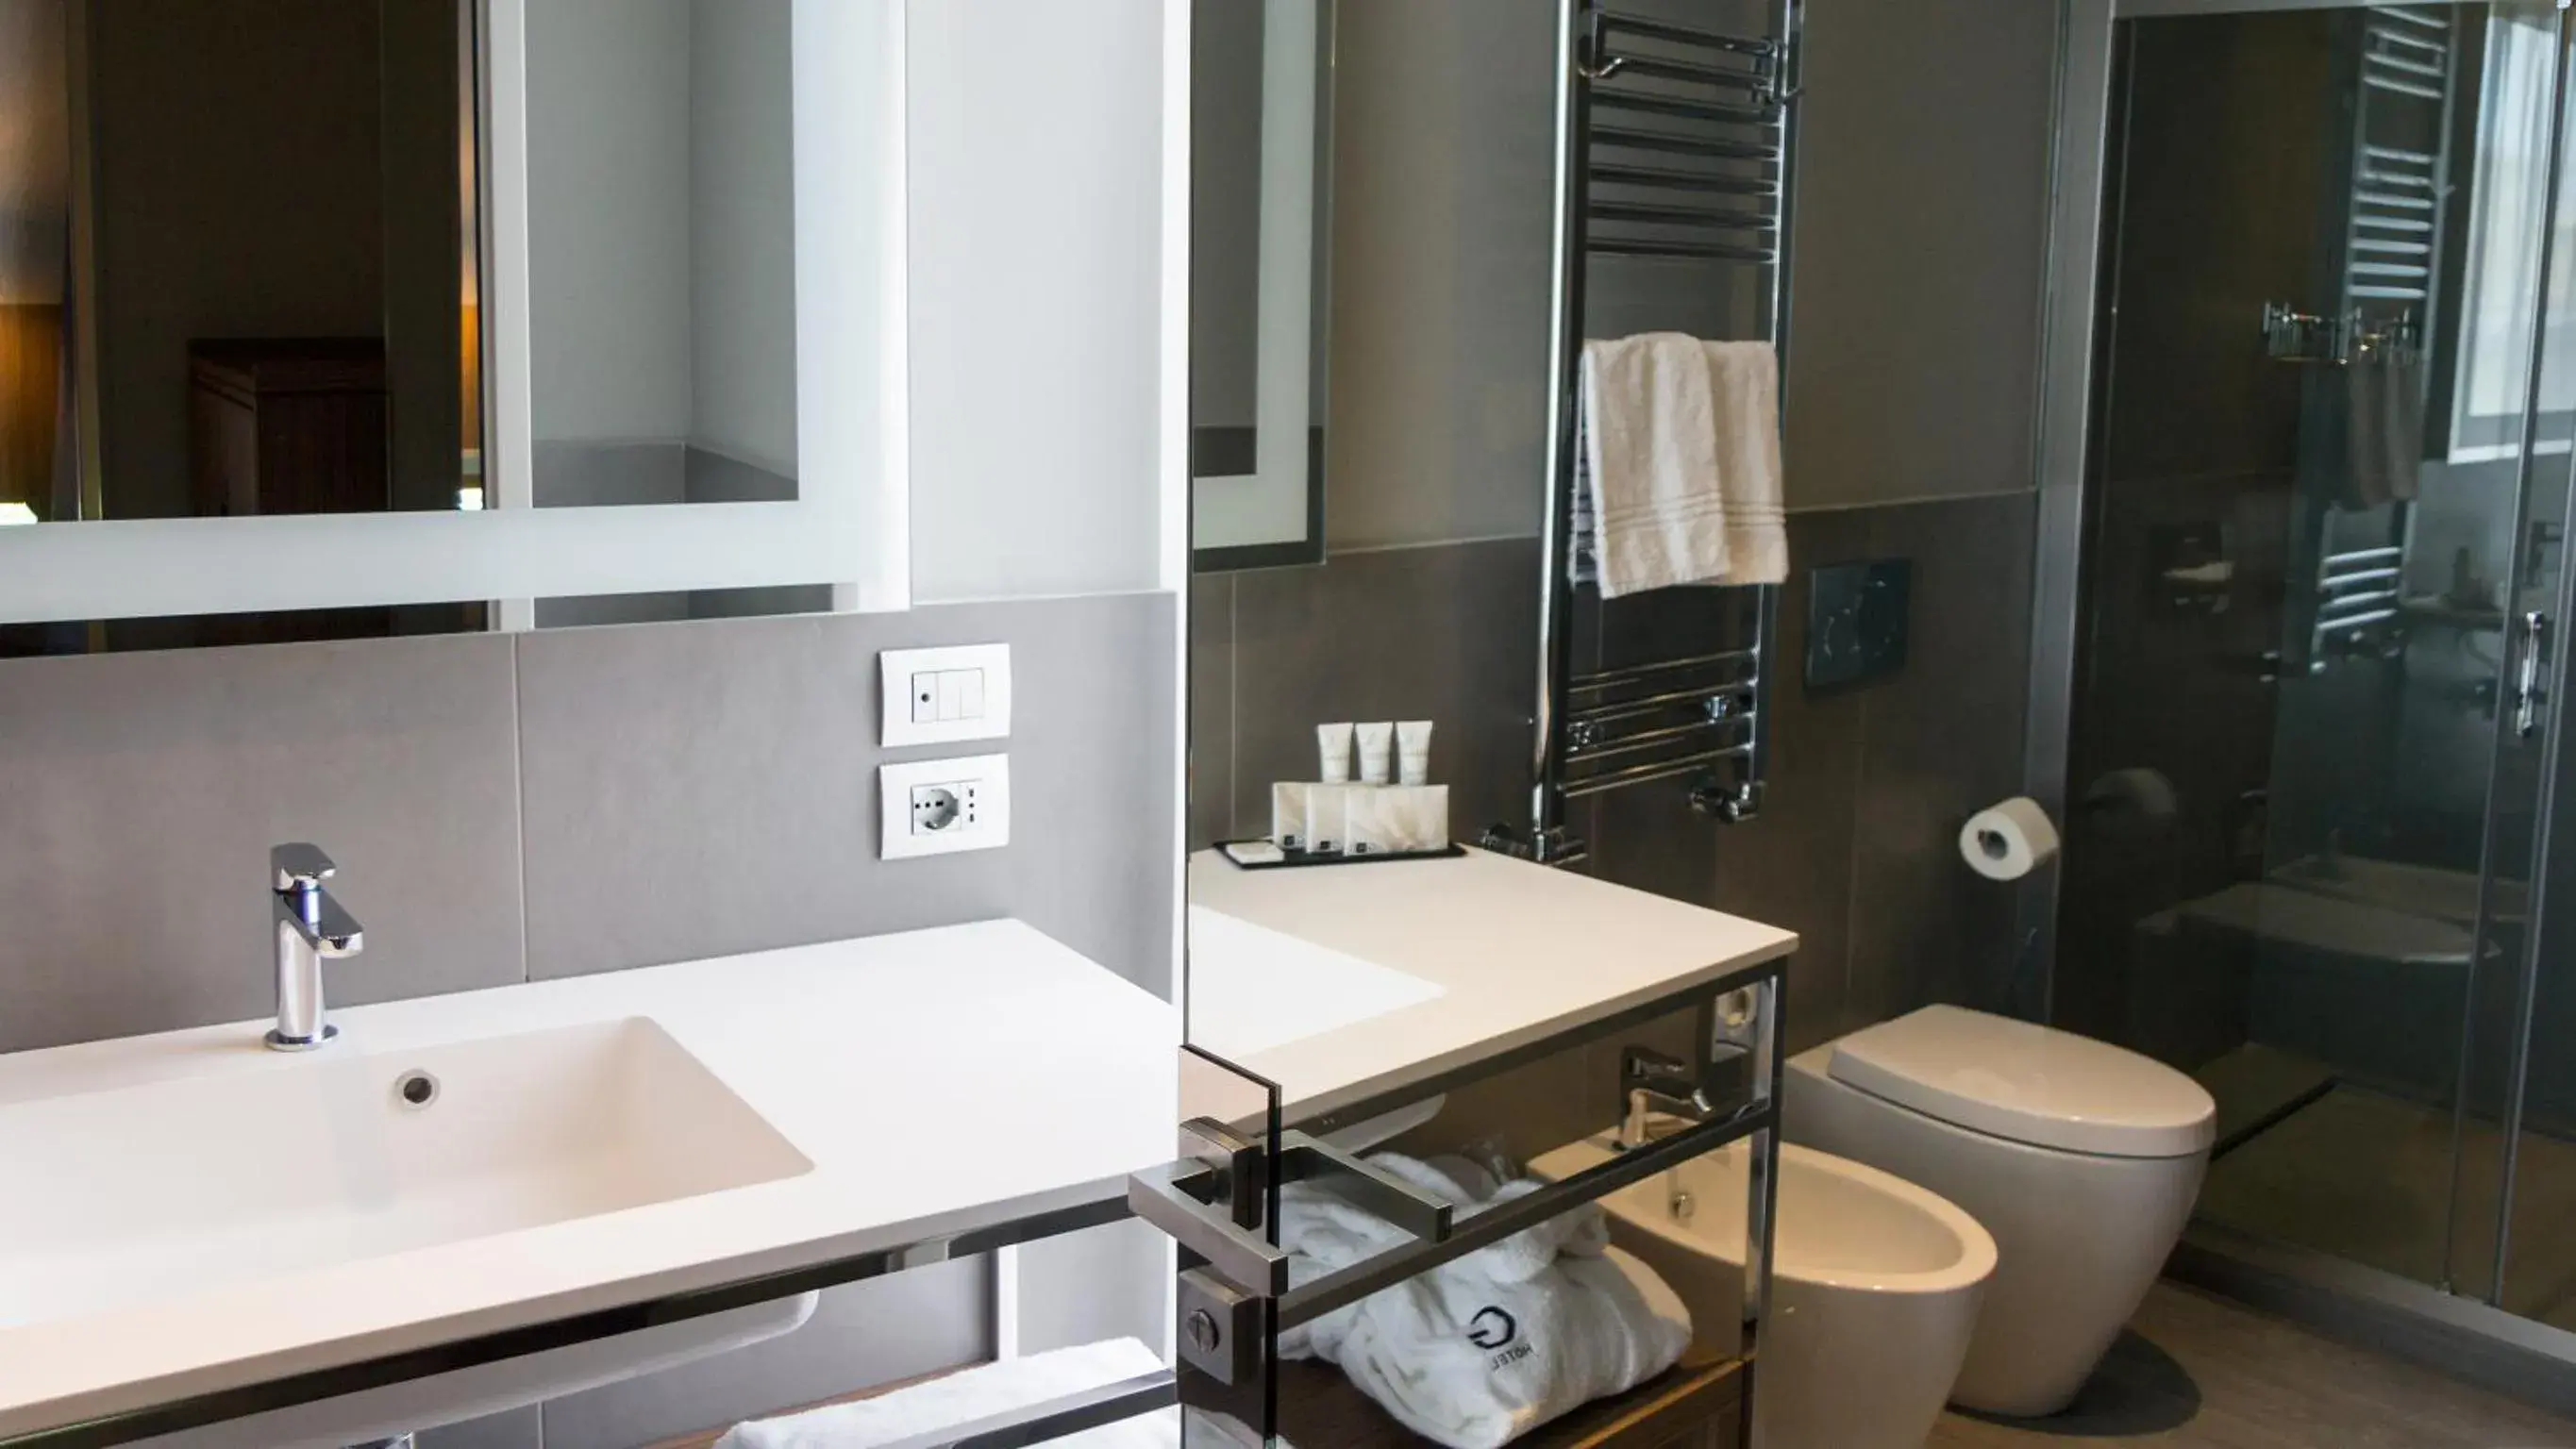 Toilet, Bathroom in G Hotel Pescara